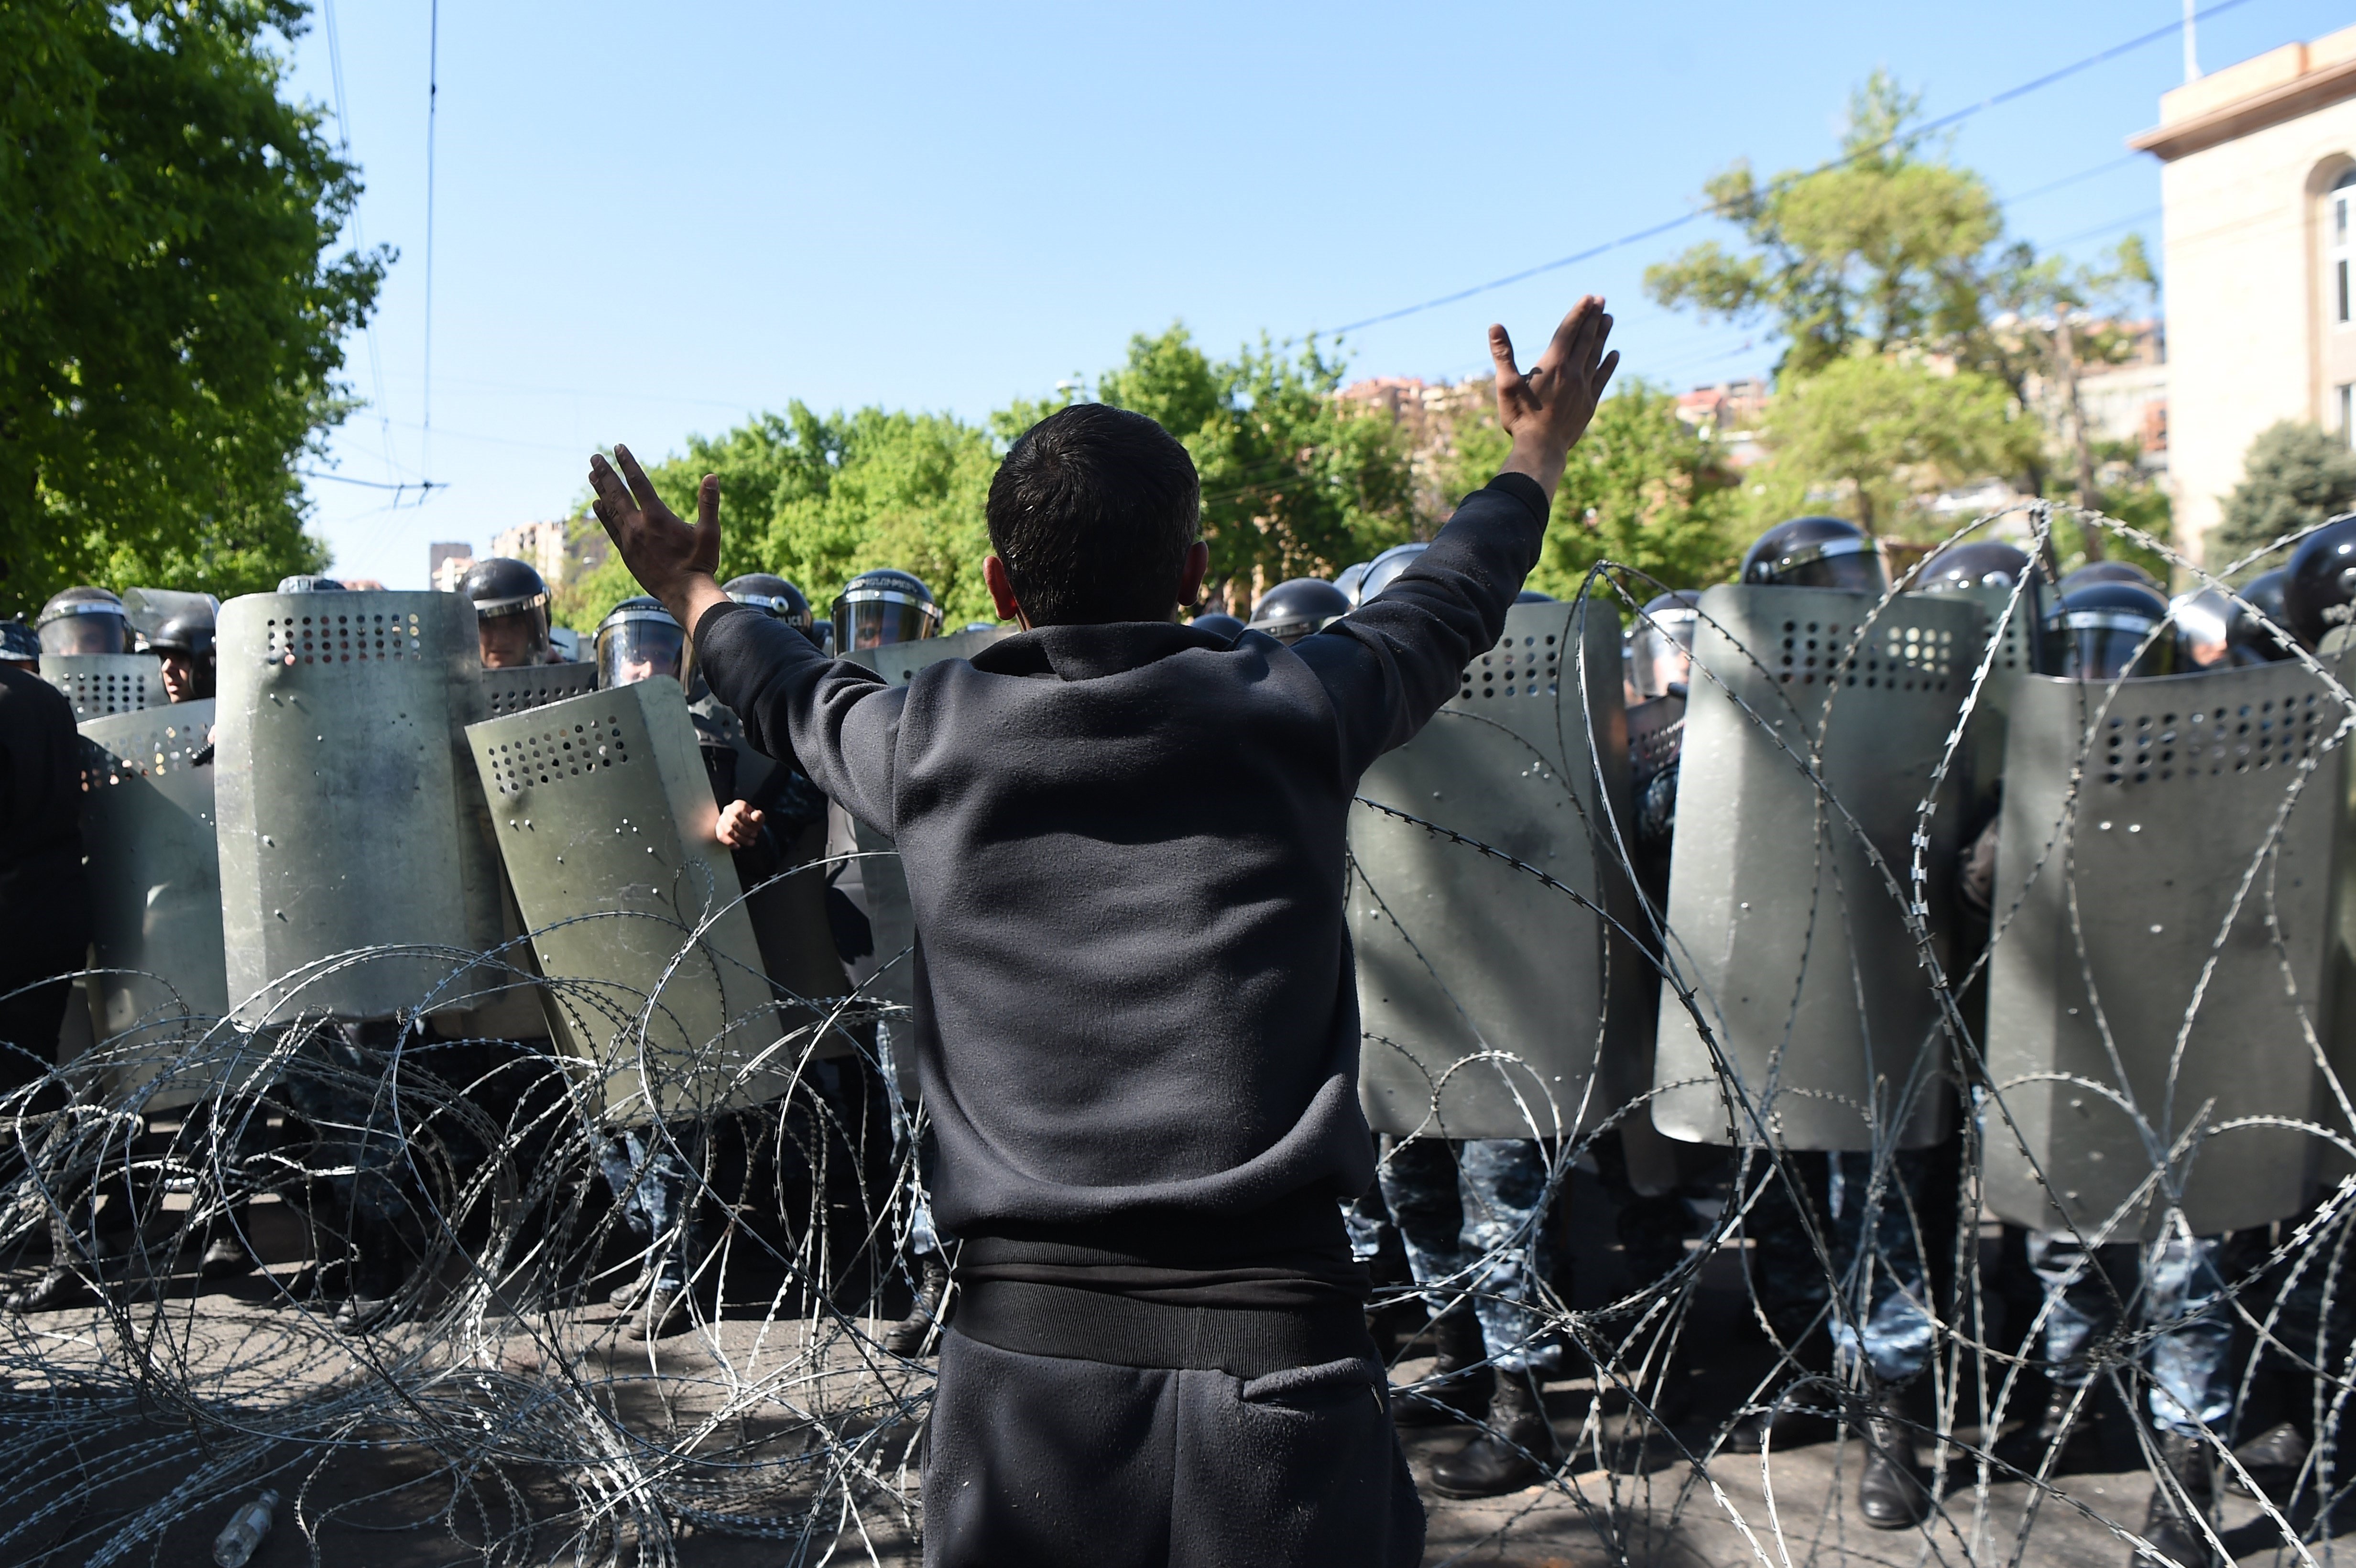 Ferides 18 persones en una manifestació a Armènia per la repressió policial